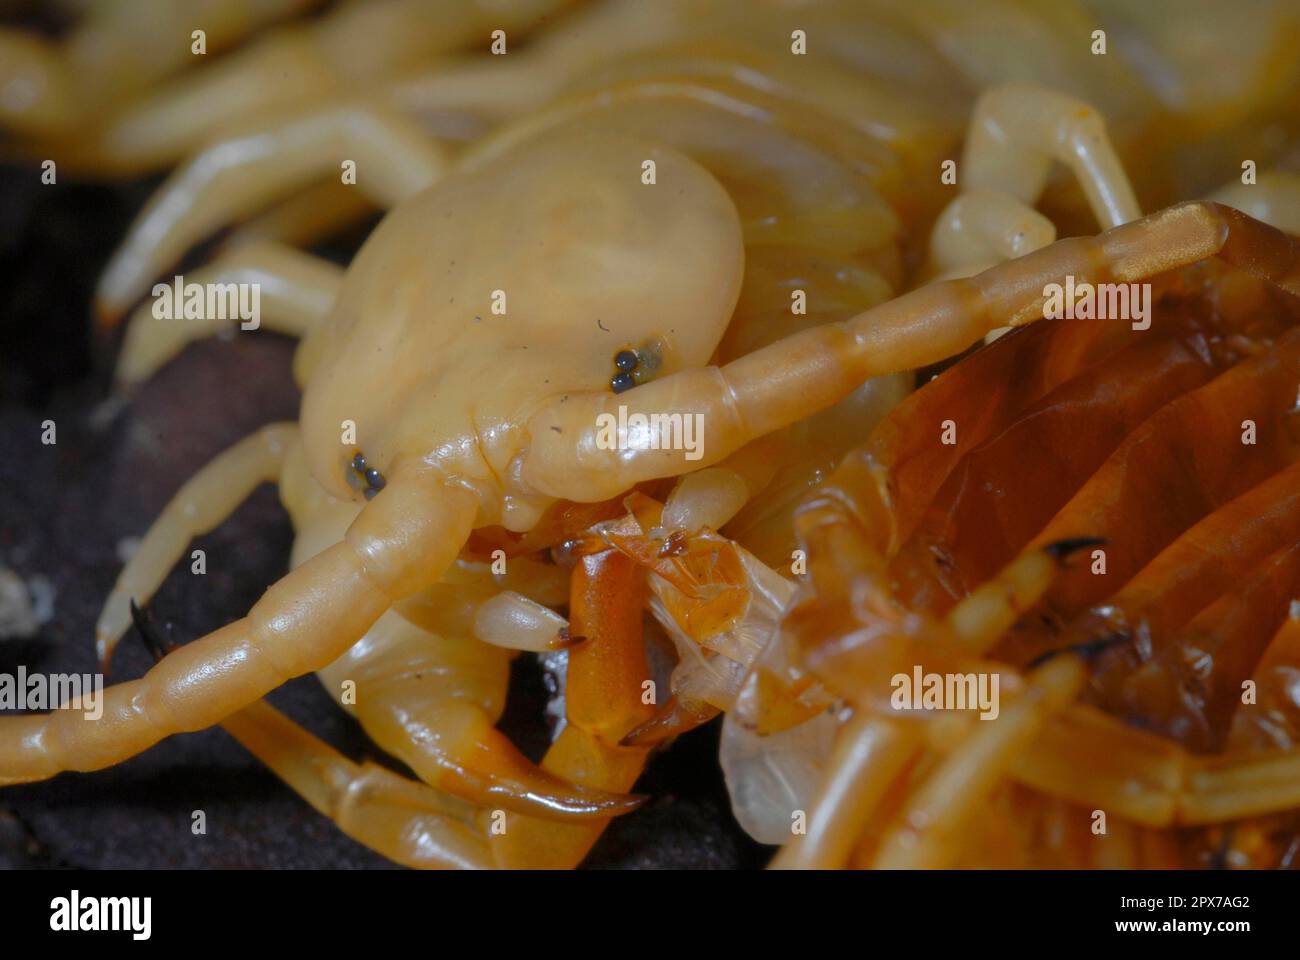 Centipede mangiare il suo exhuviaSkolopender mangia exoscheletro dopo la muffa Foto Stock